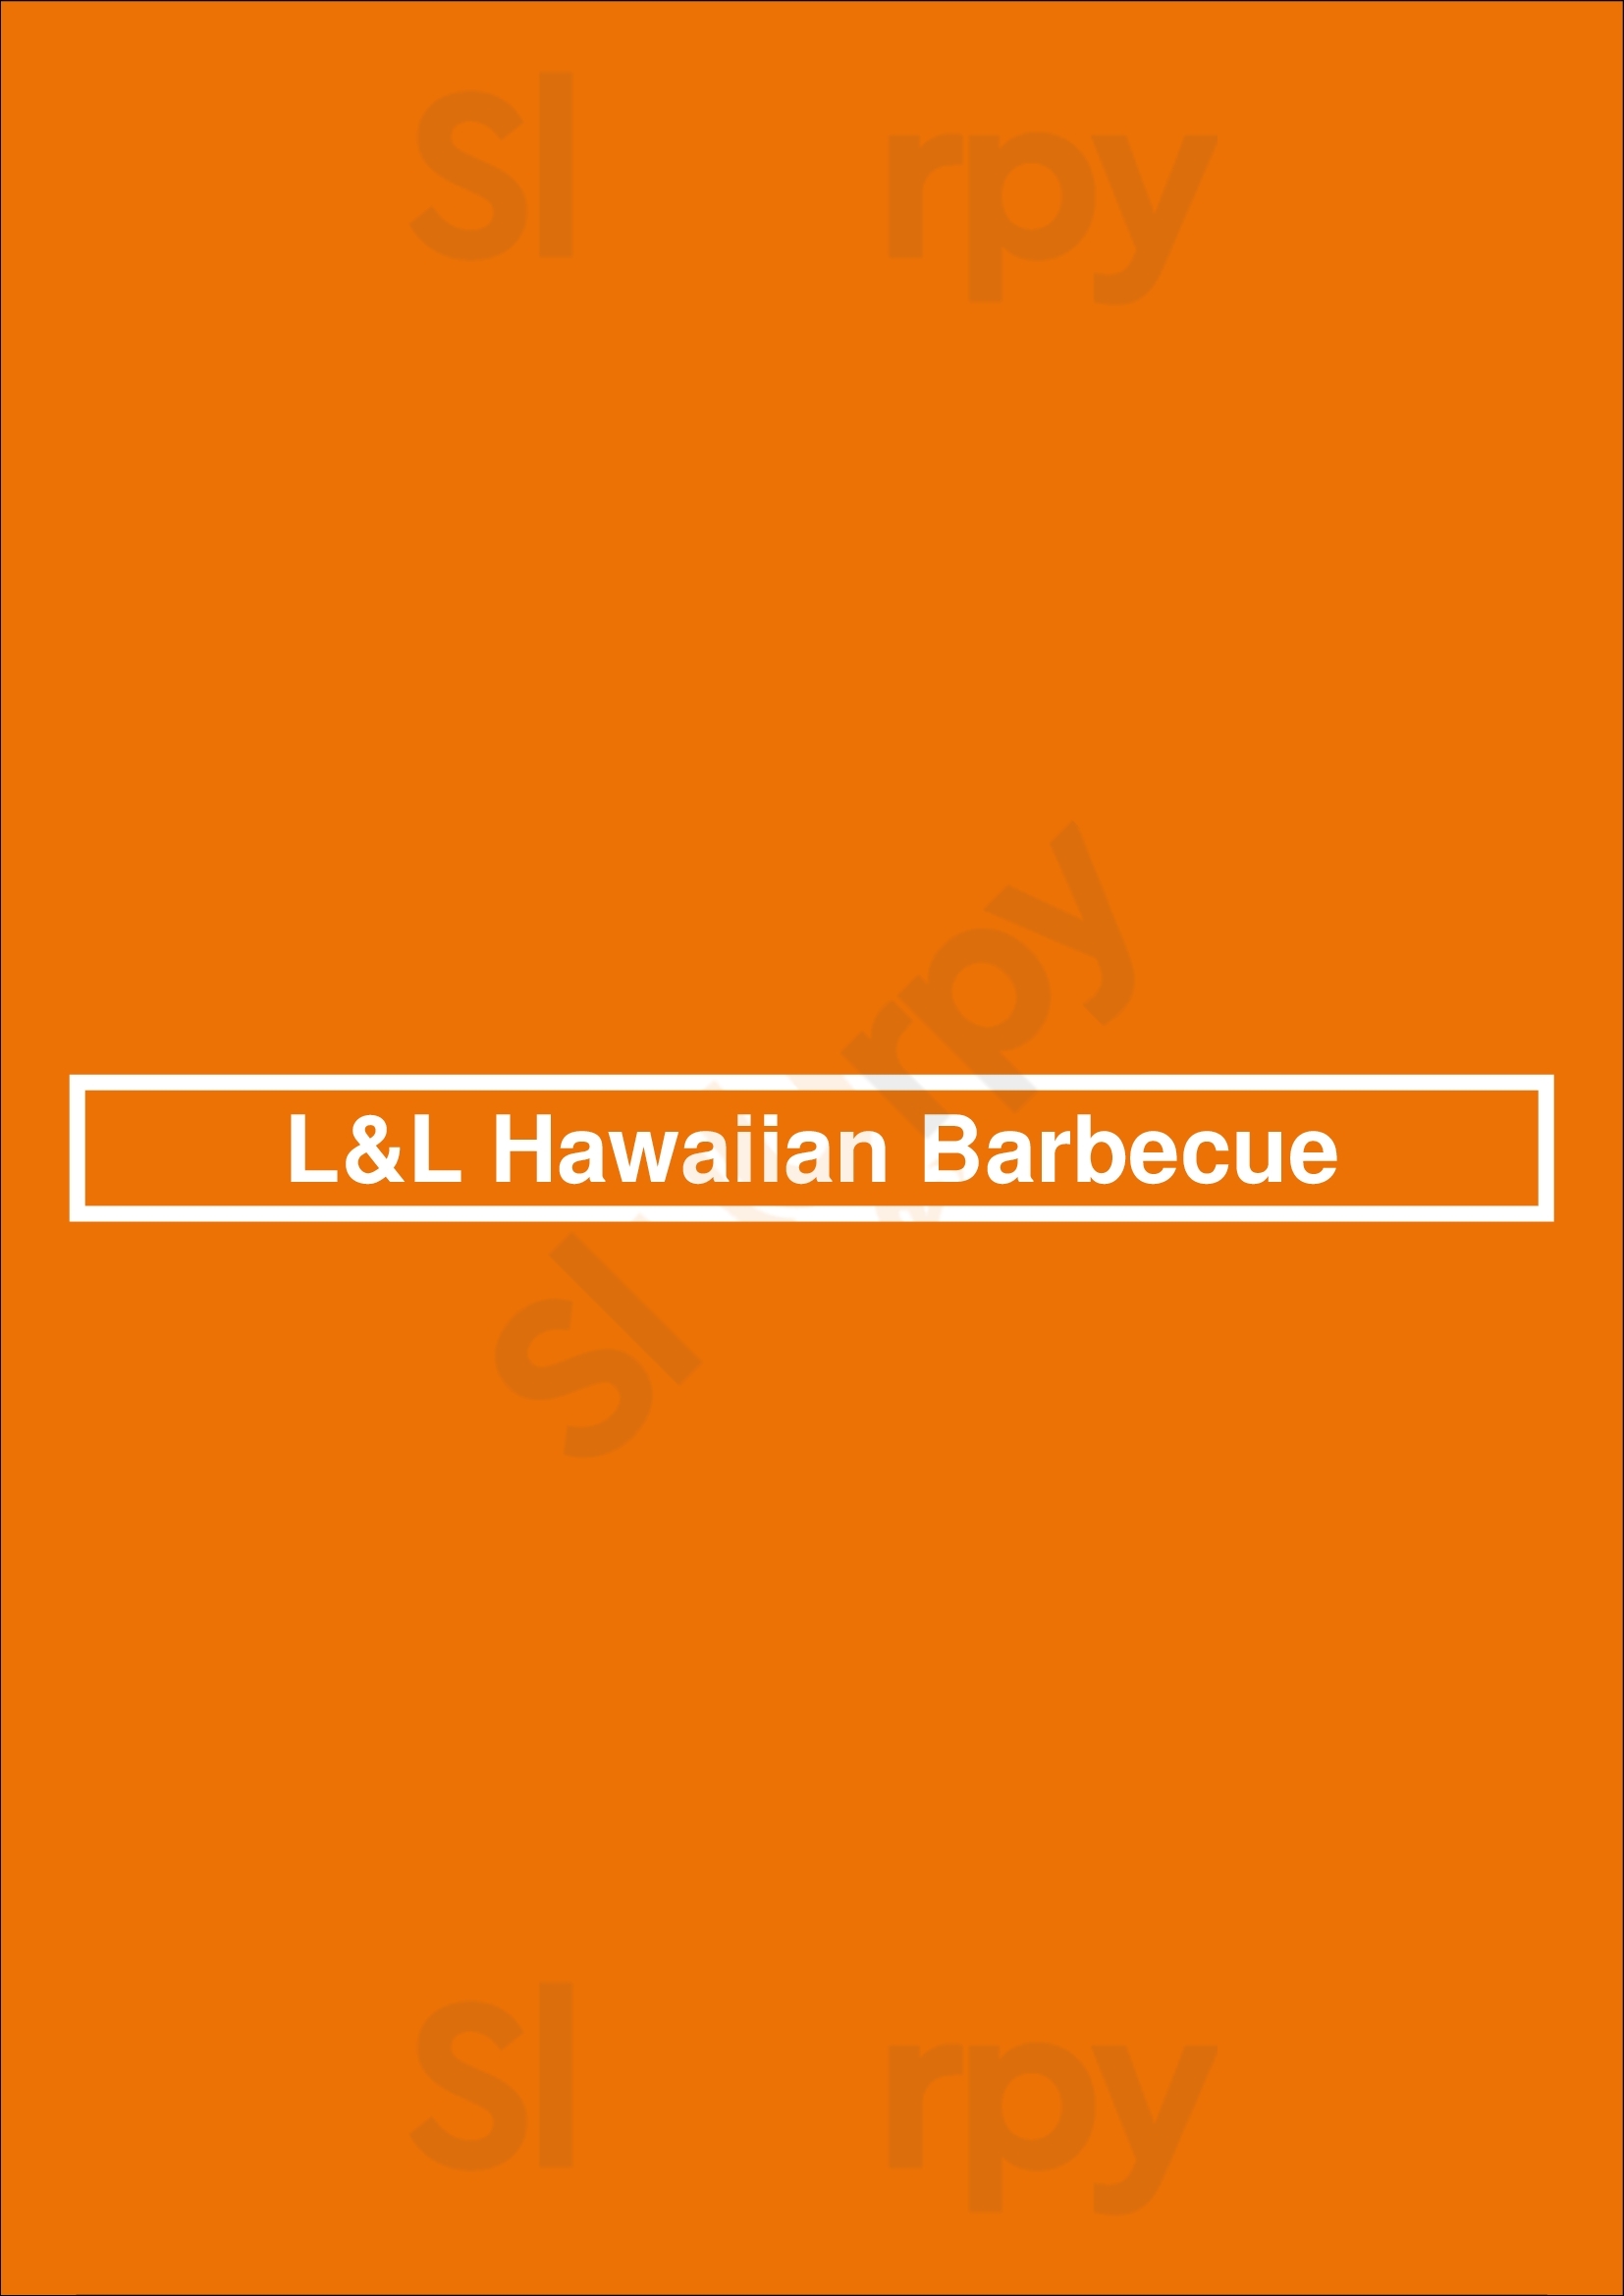 L&l Hawaiian Barbecue - Sacramento Sacramento Menu - 1